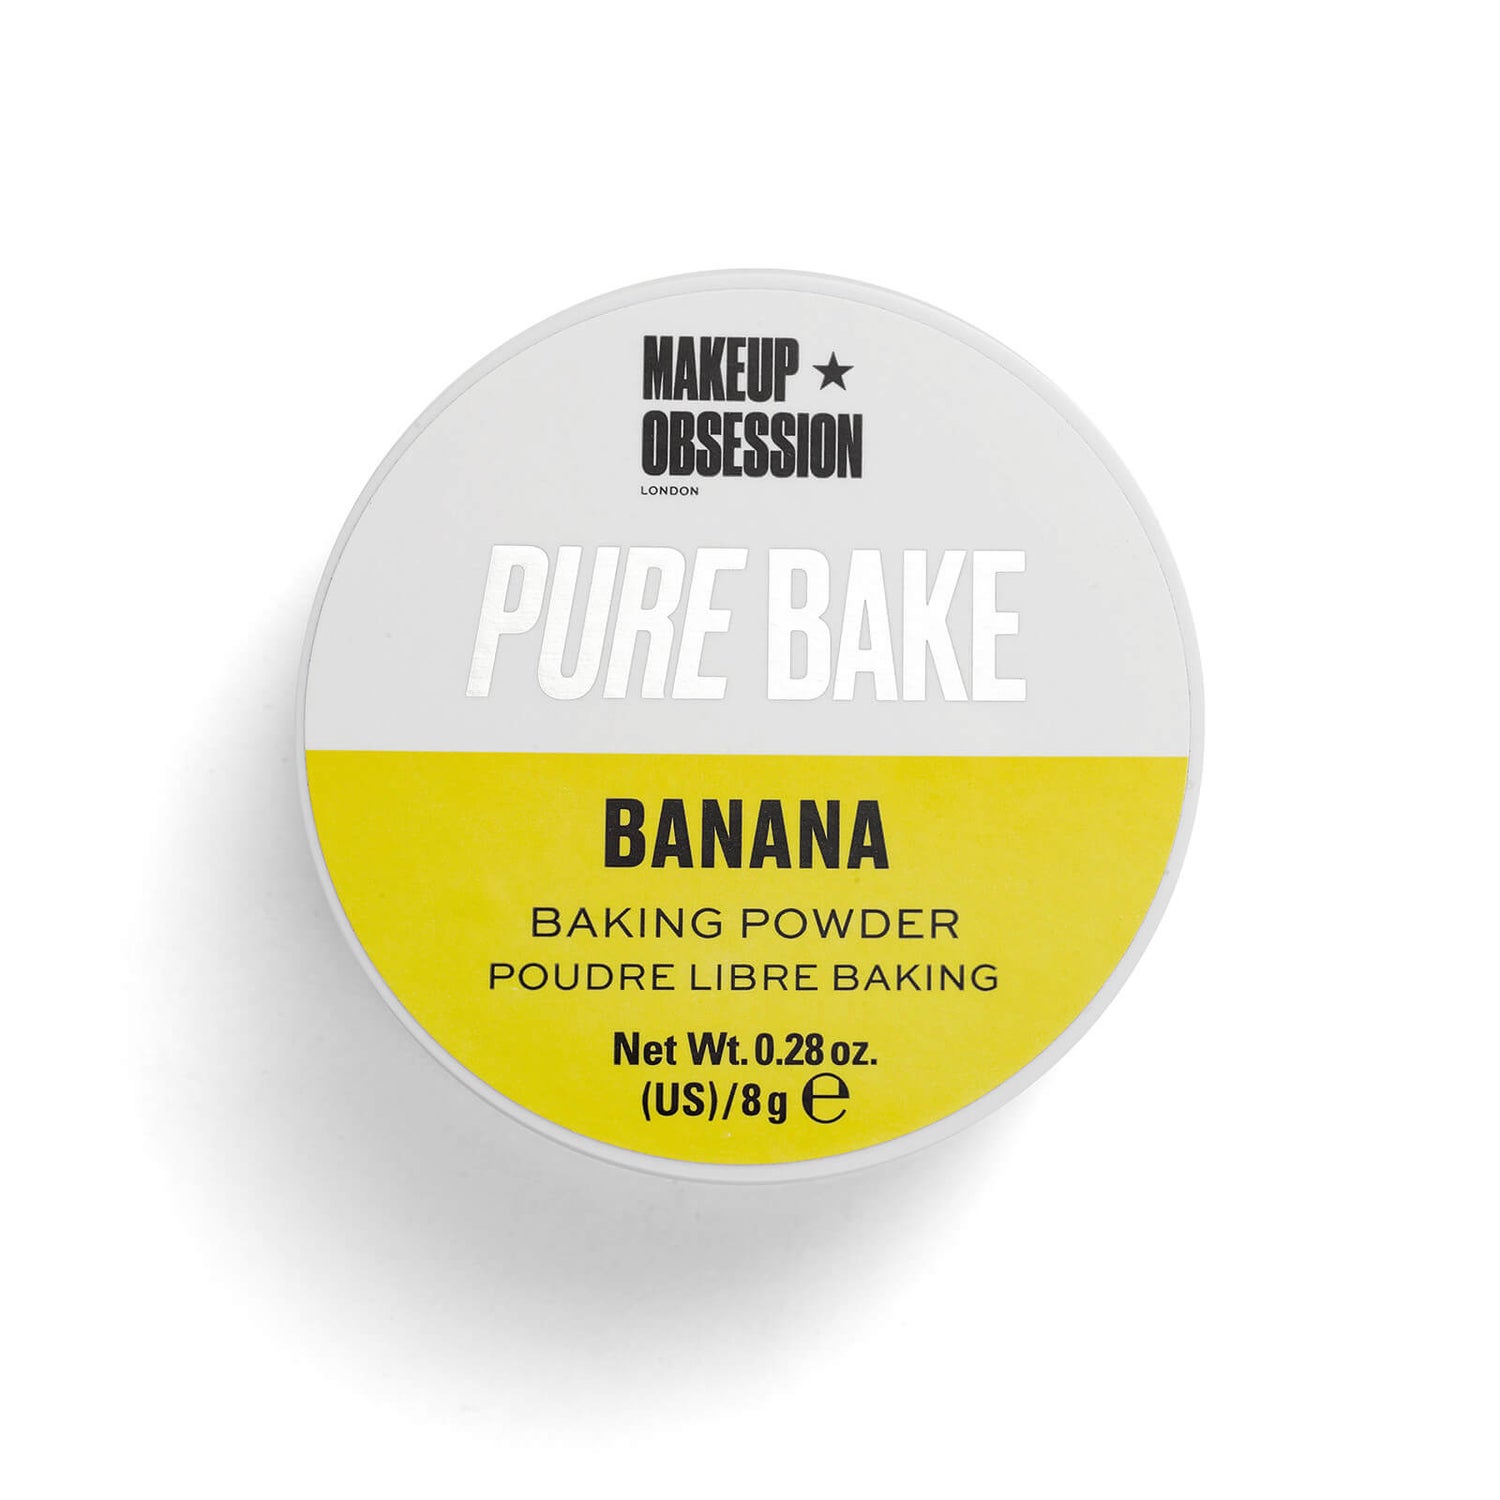 Make up Obsession Pure Bake Baking Powder - Banana